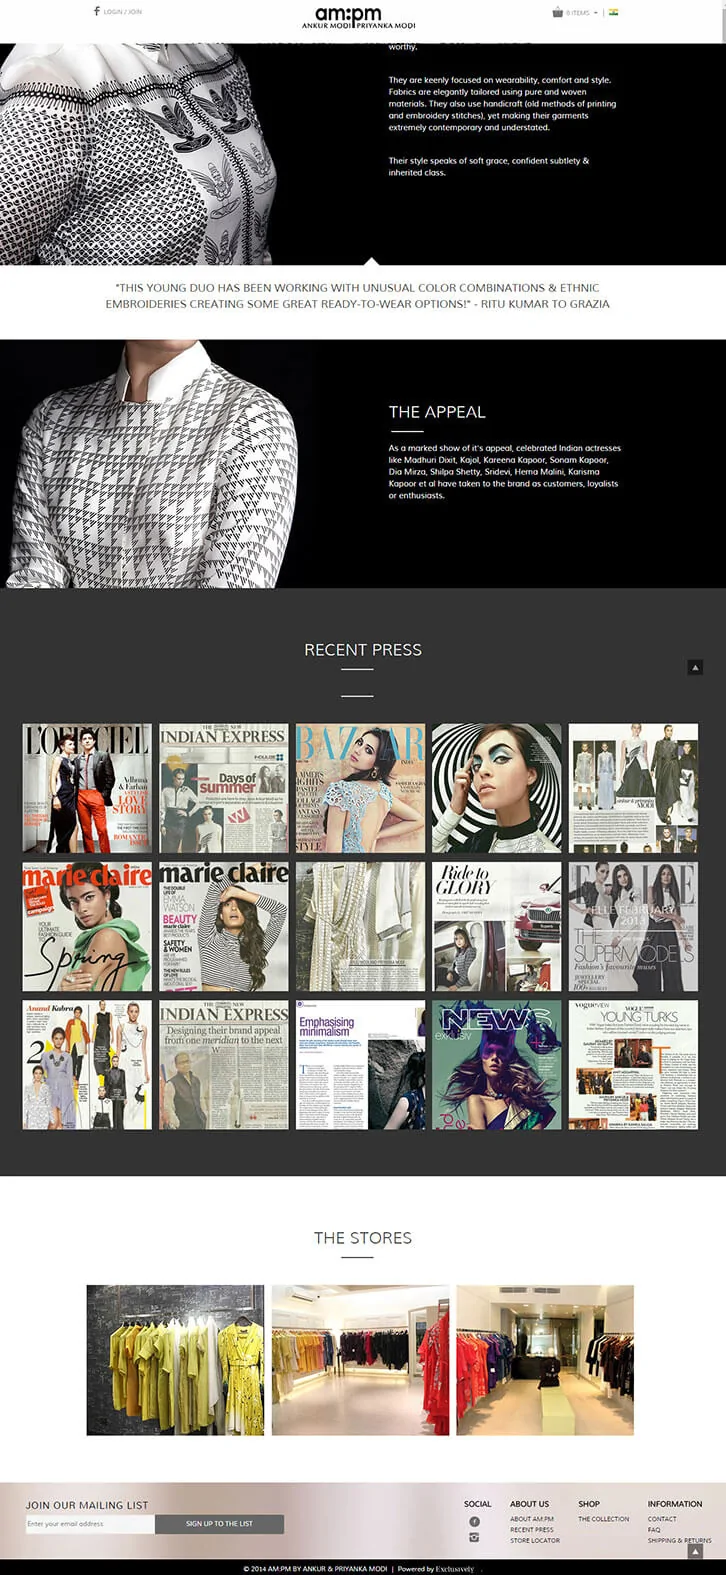 Portfolio and e-commerce website for famous indian fashion designer Ankur Modi and Priyanka Modi - AMPM.in